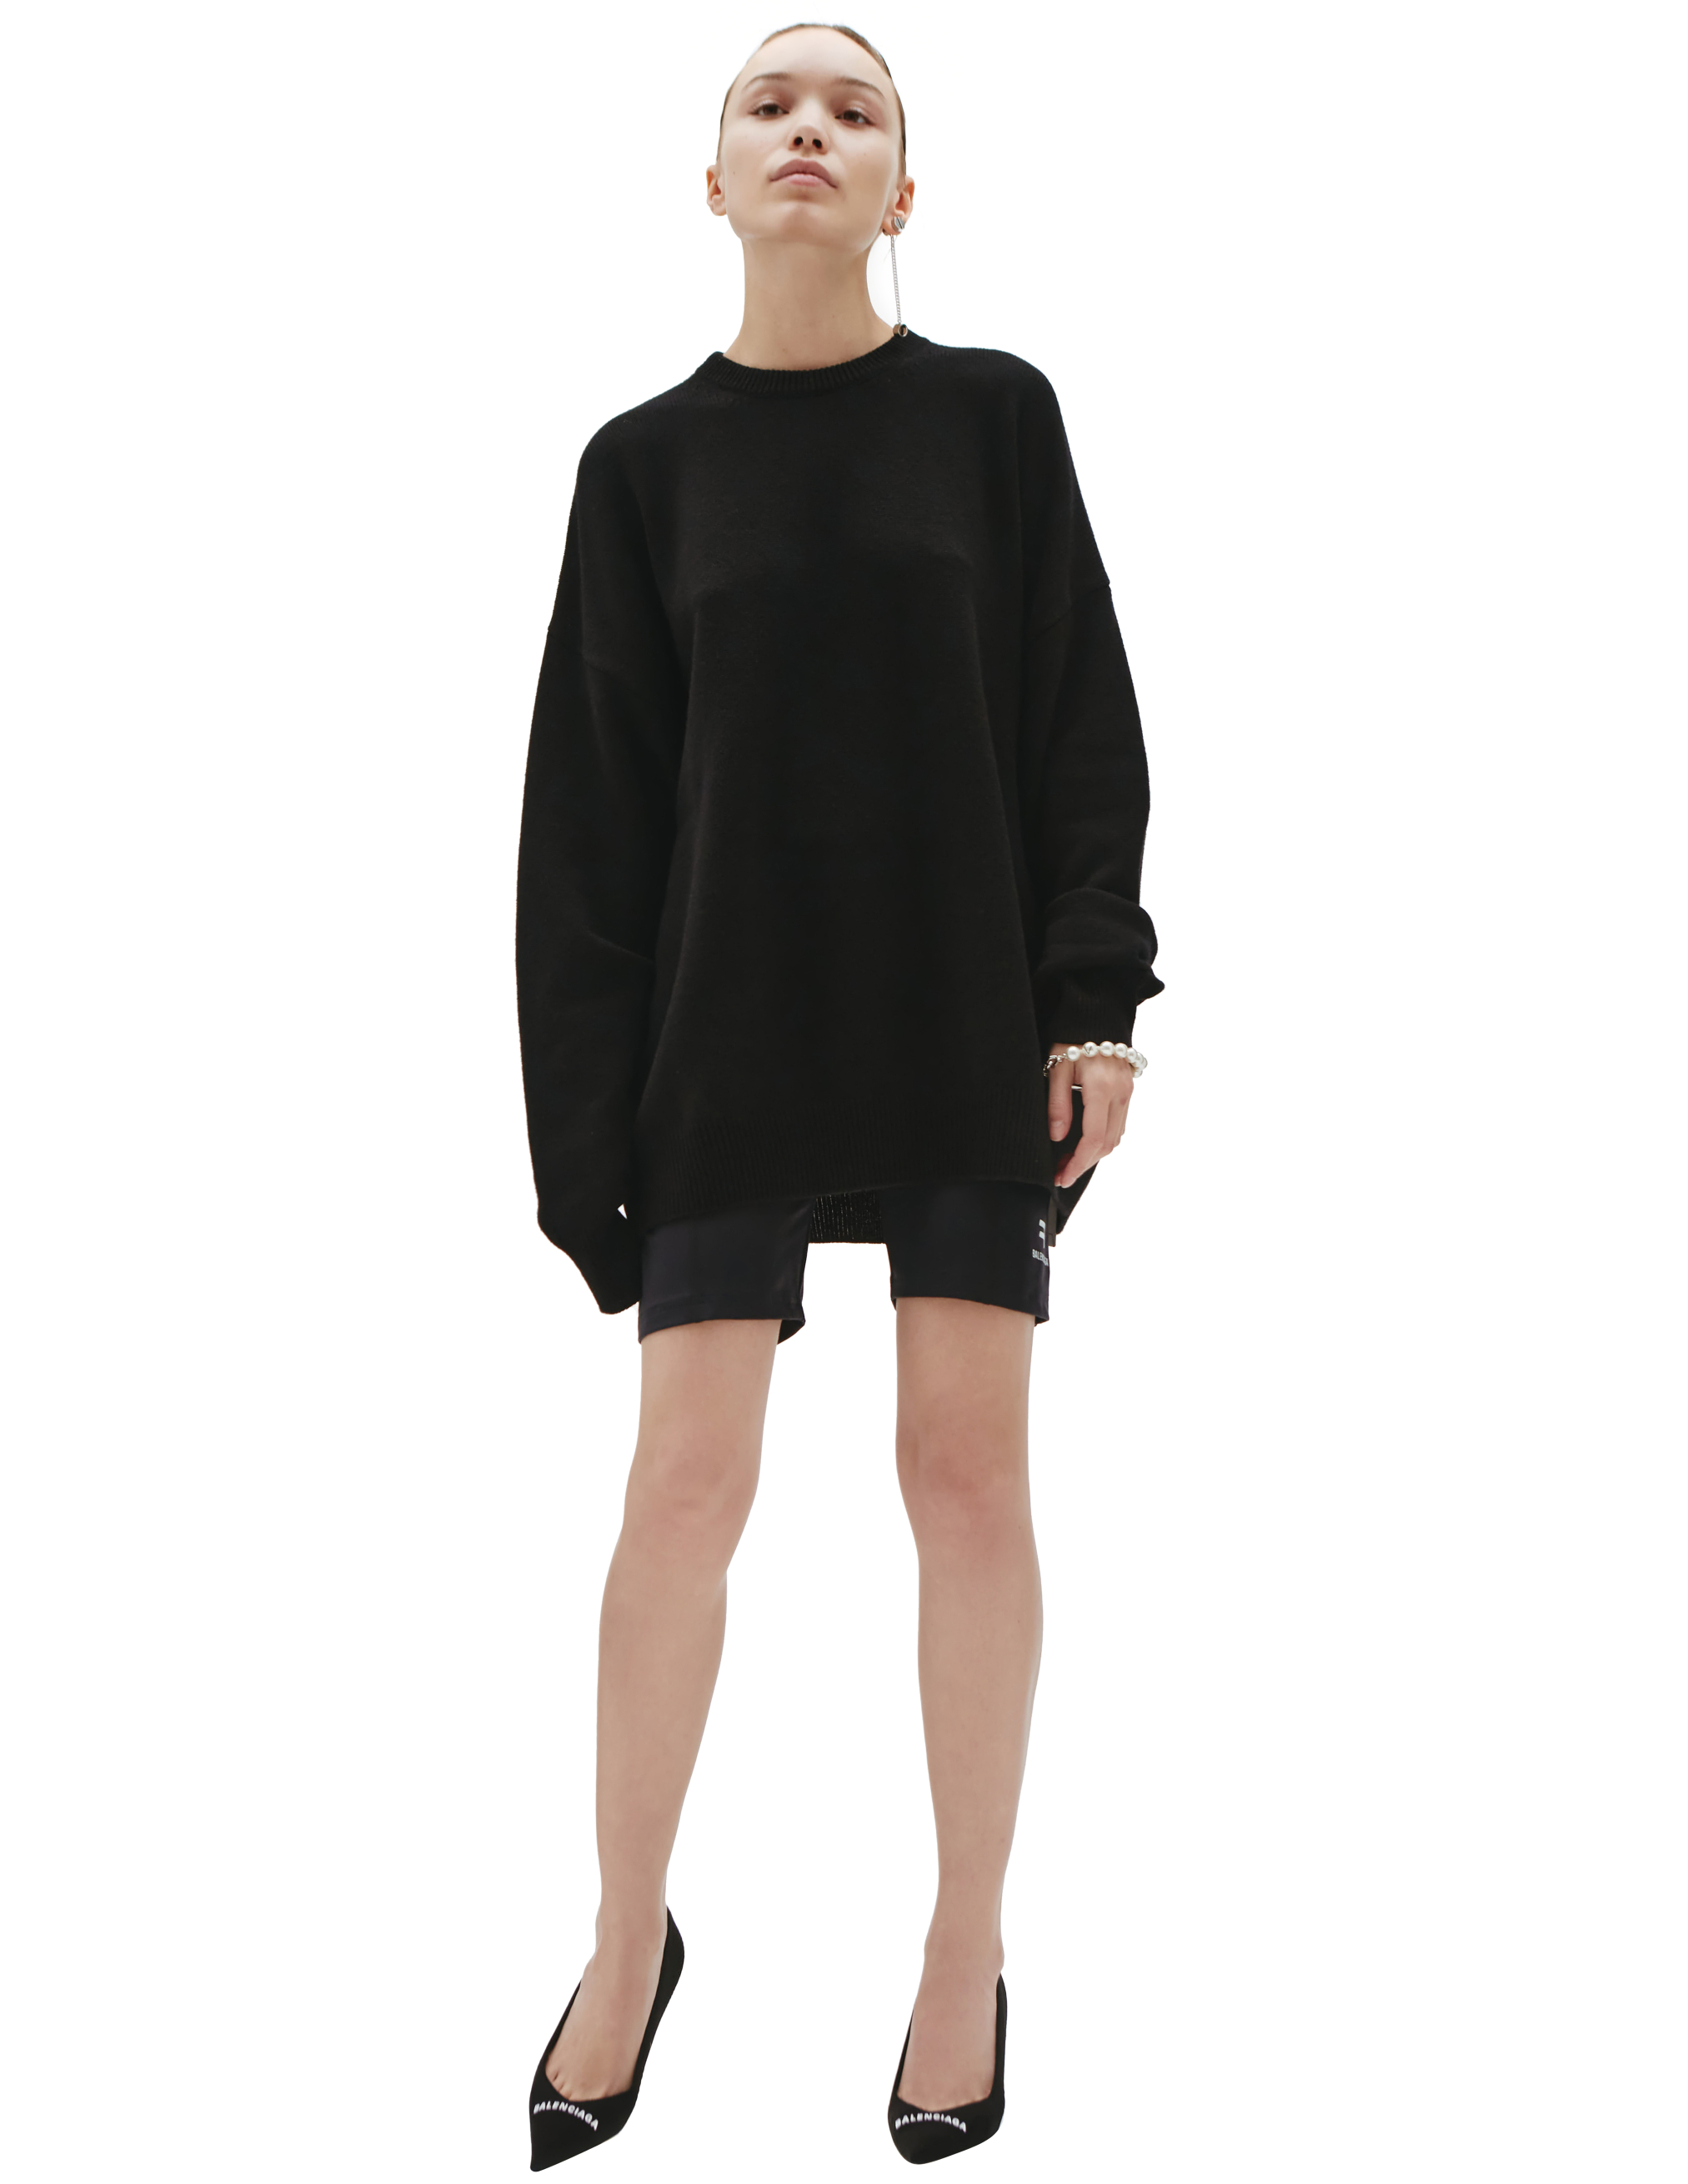 Черный свитер из кашемира Balenciaga 681983/T4124/1000, размер XL;L 681983/T4124/1000 - фото 1